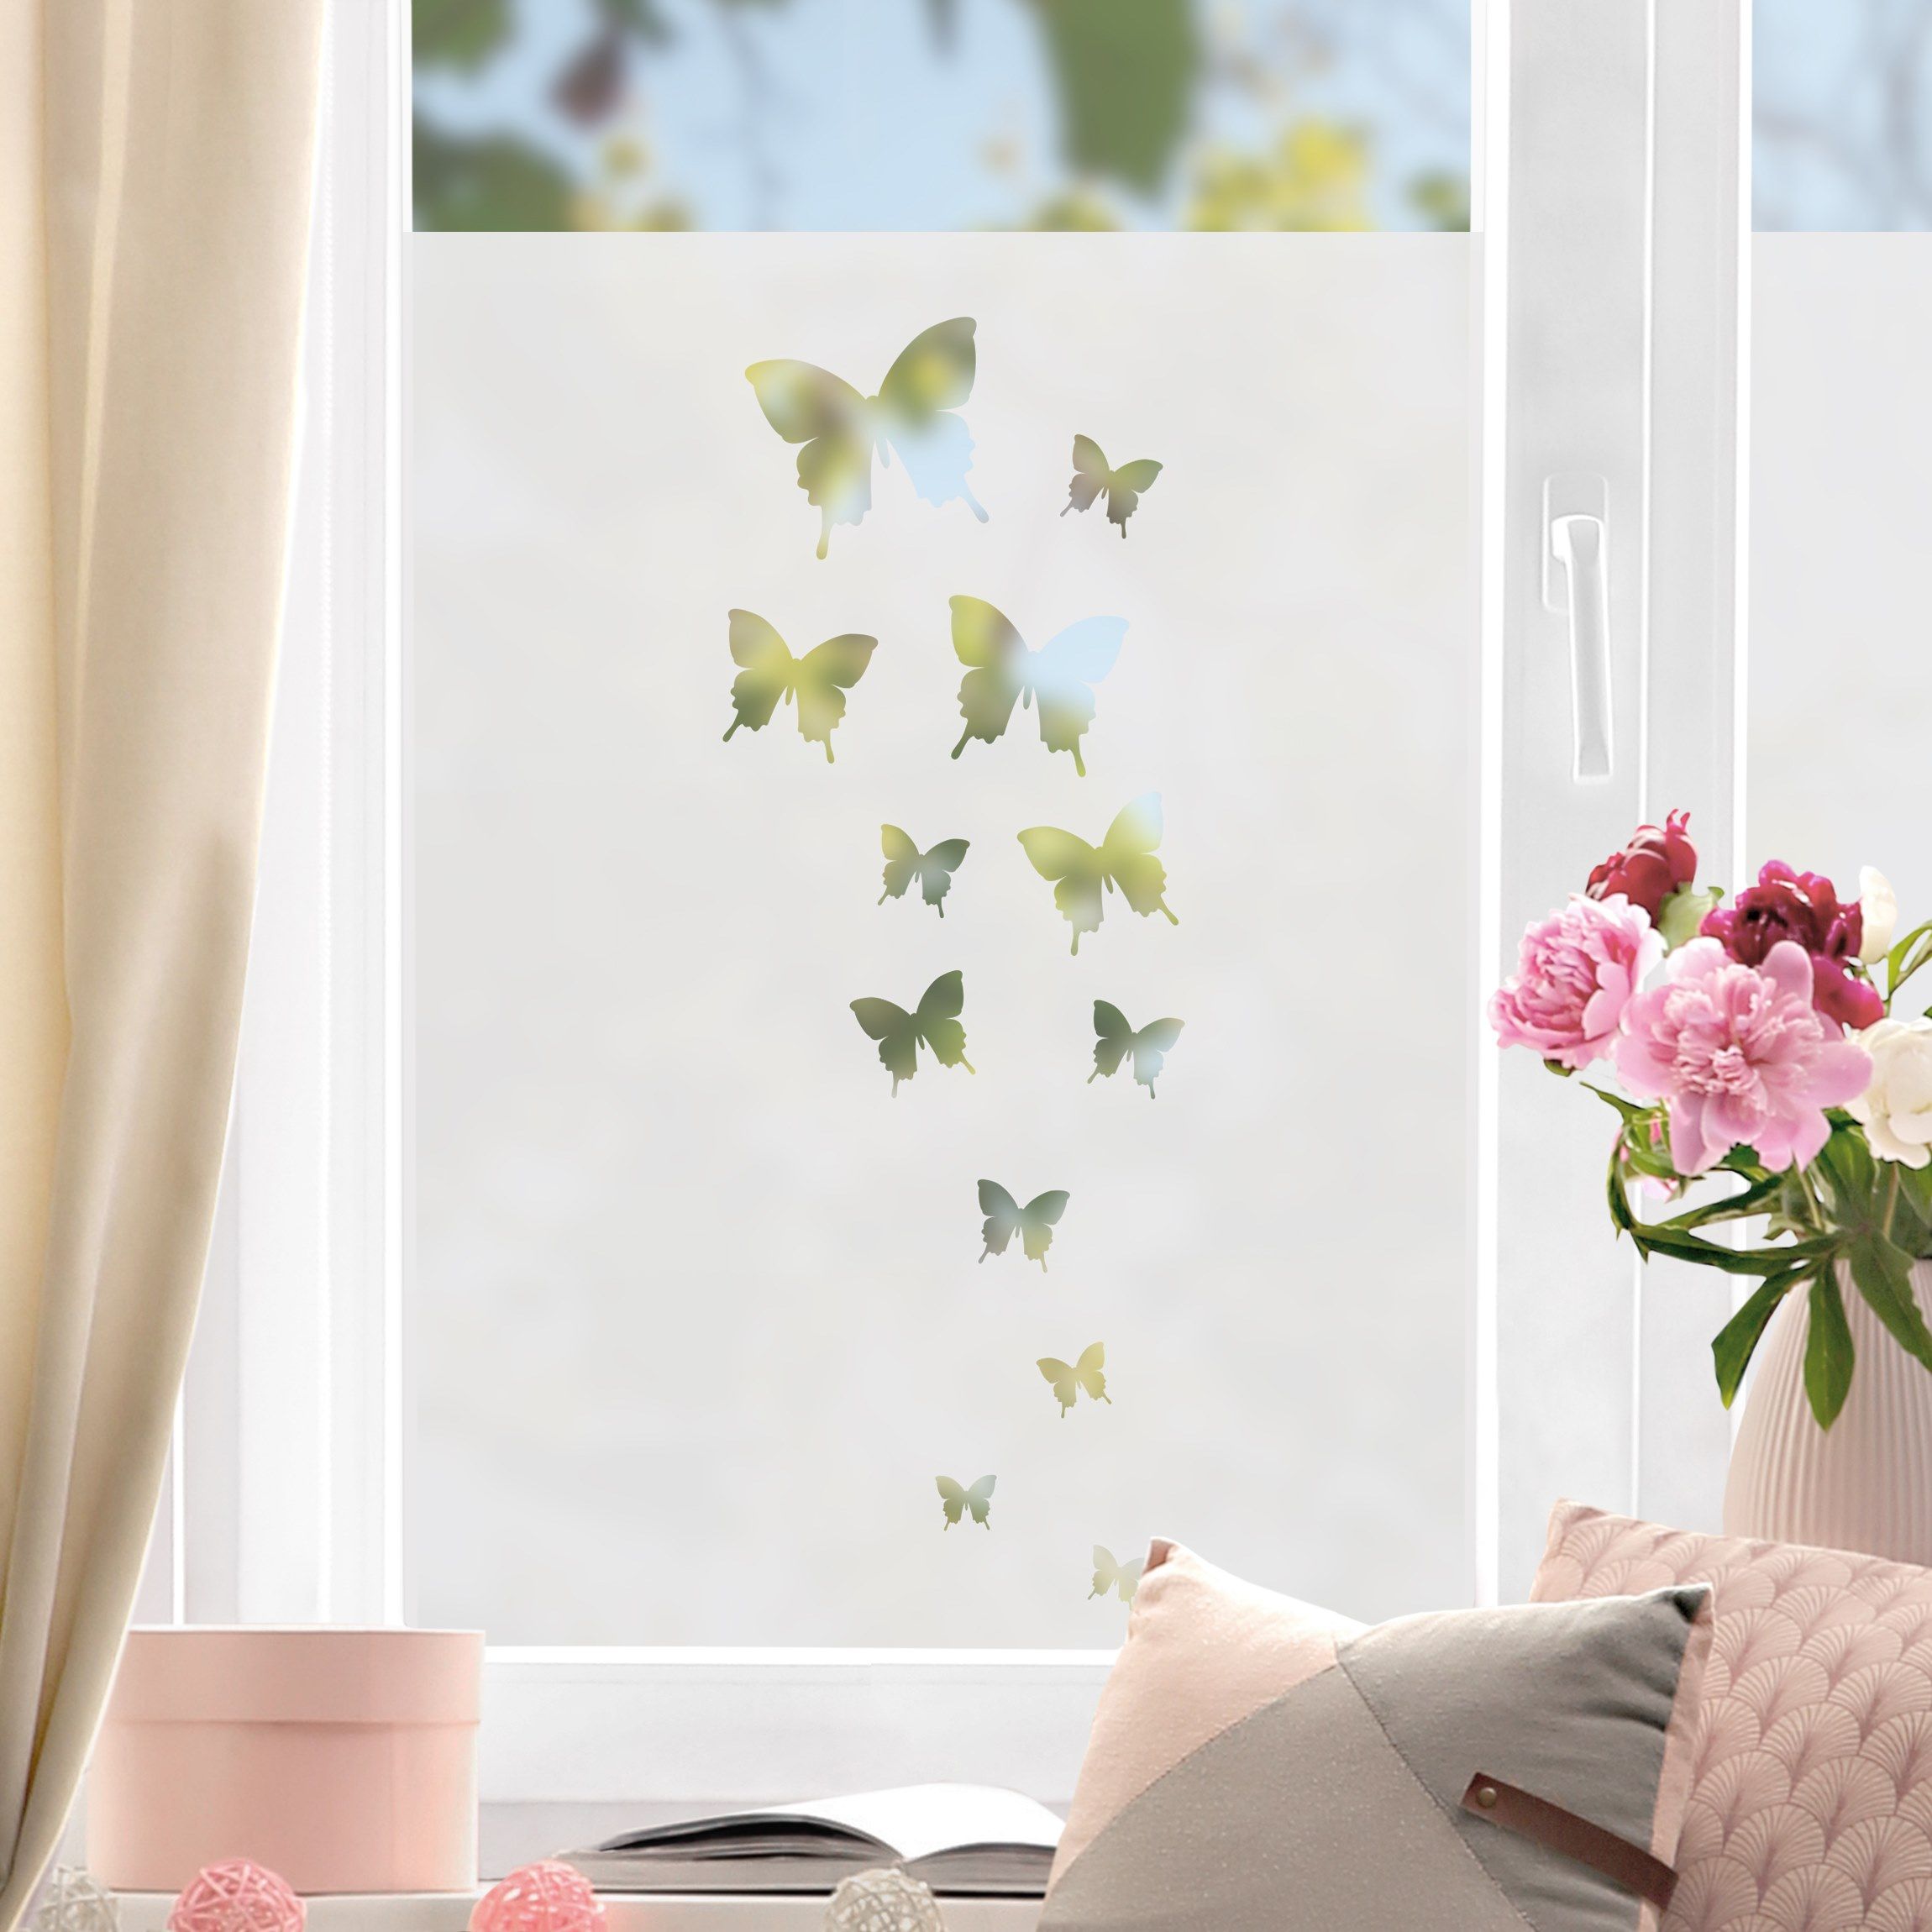 pellicola adesiva per vetri farfalle decorative - TenStickers